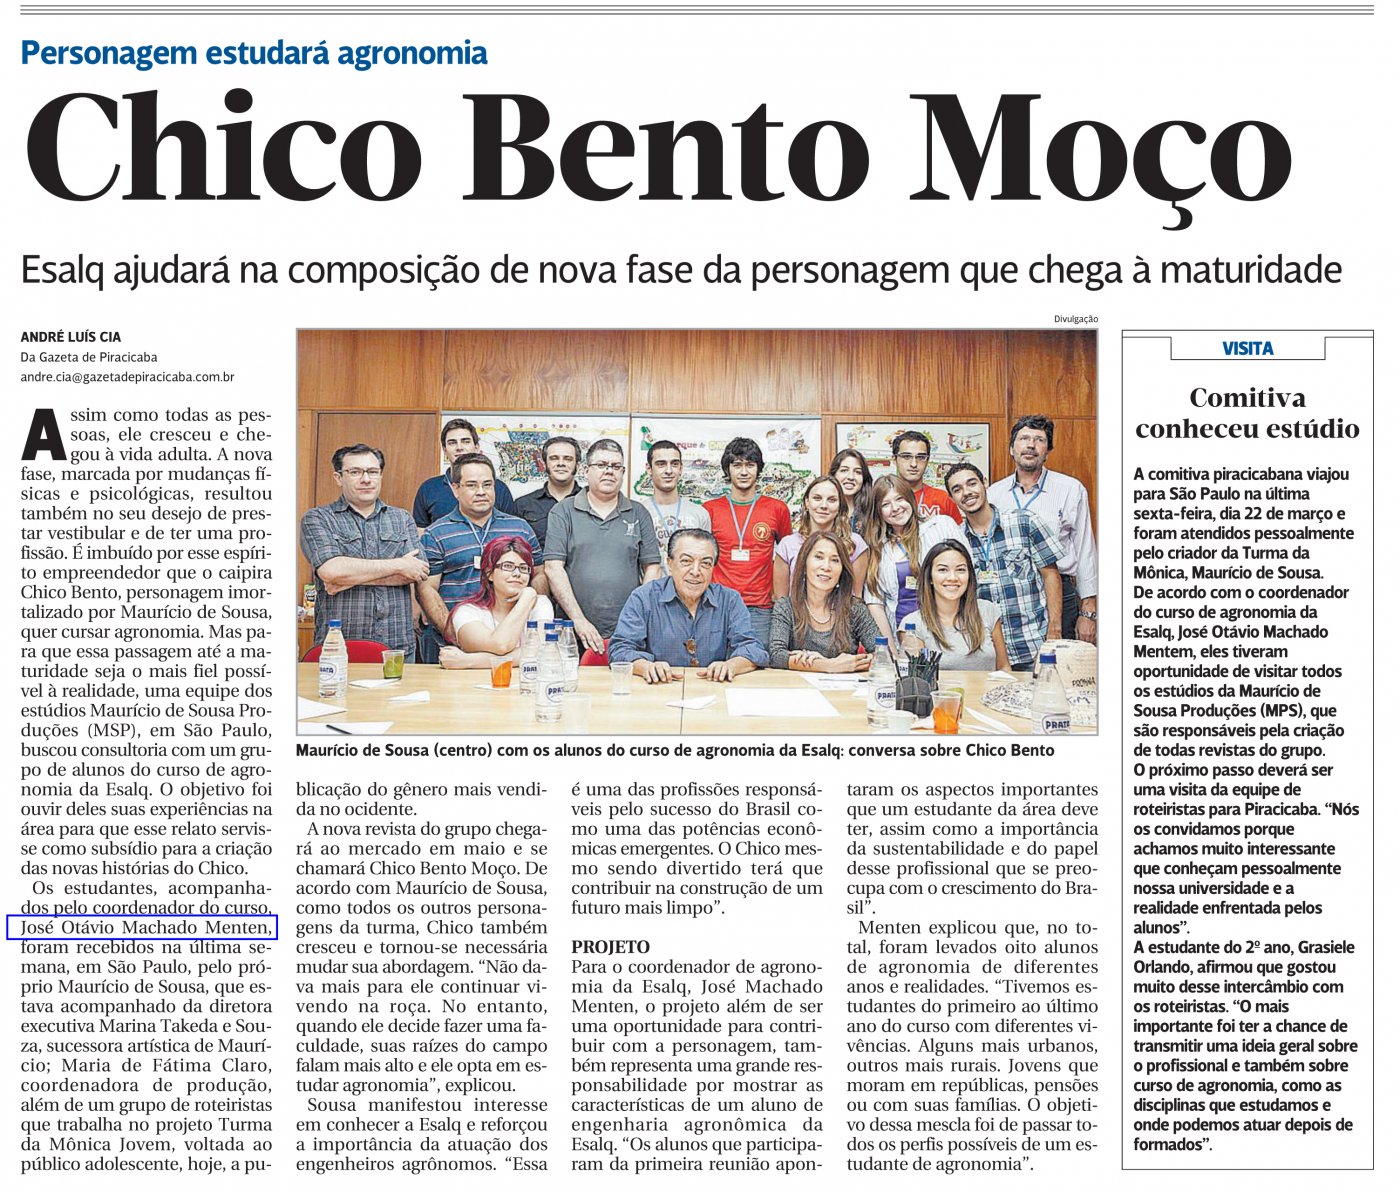 Gazeta de Piracicaba também divulga a criação do personagem Chico Bento Moço